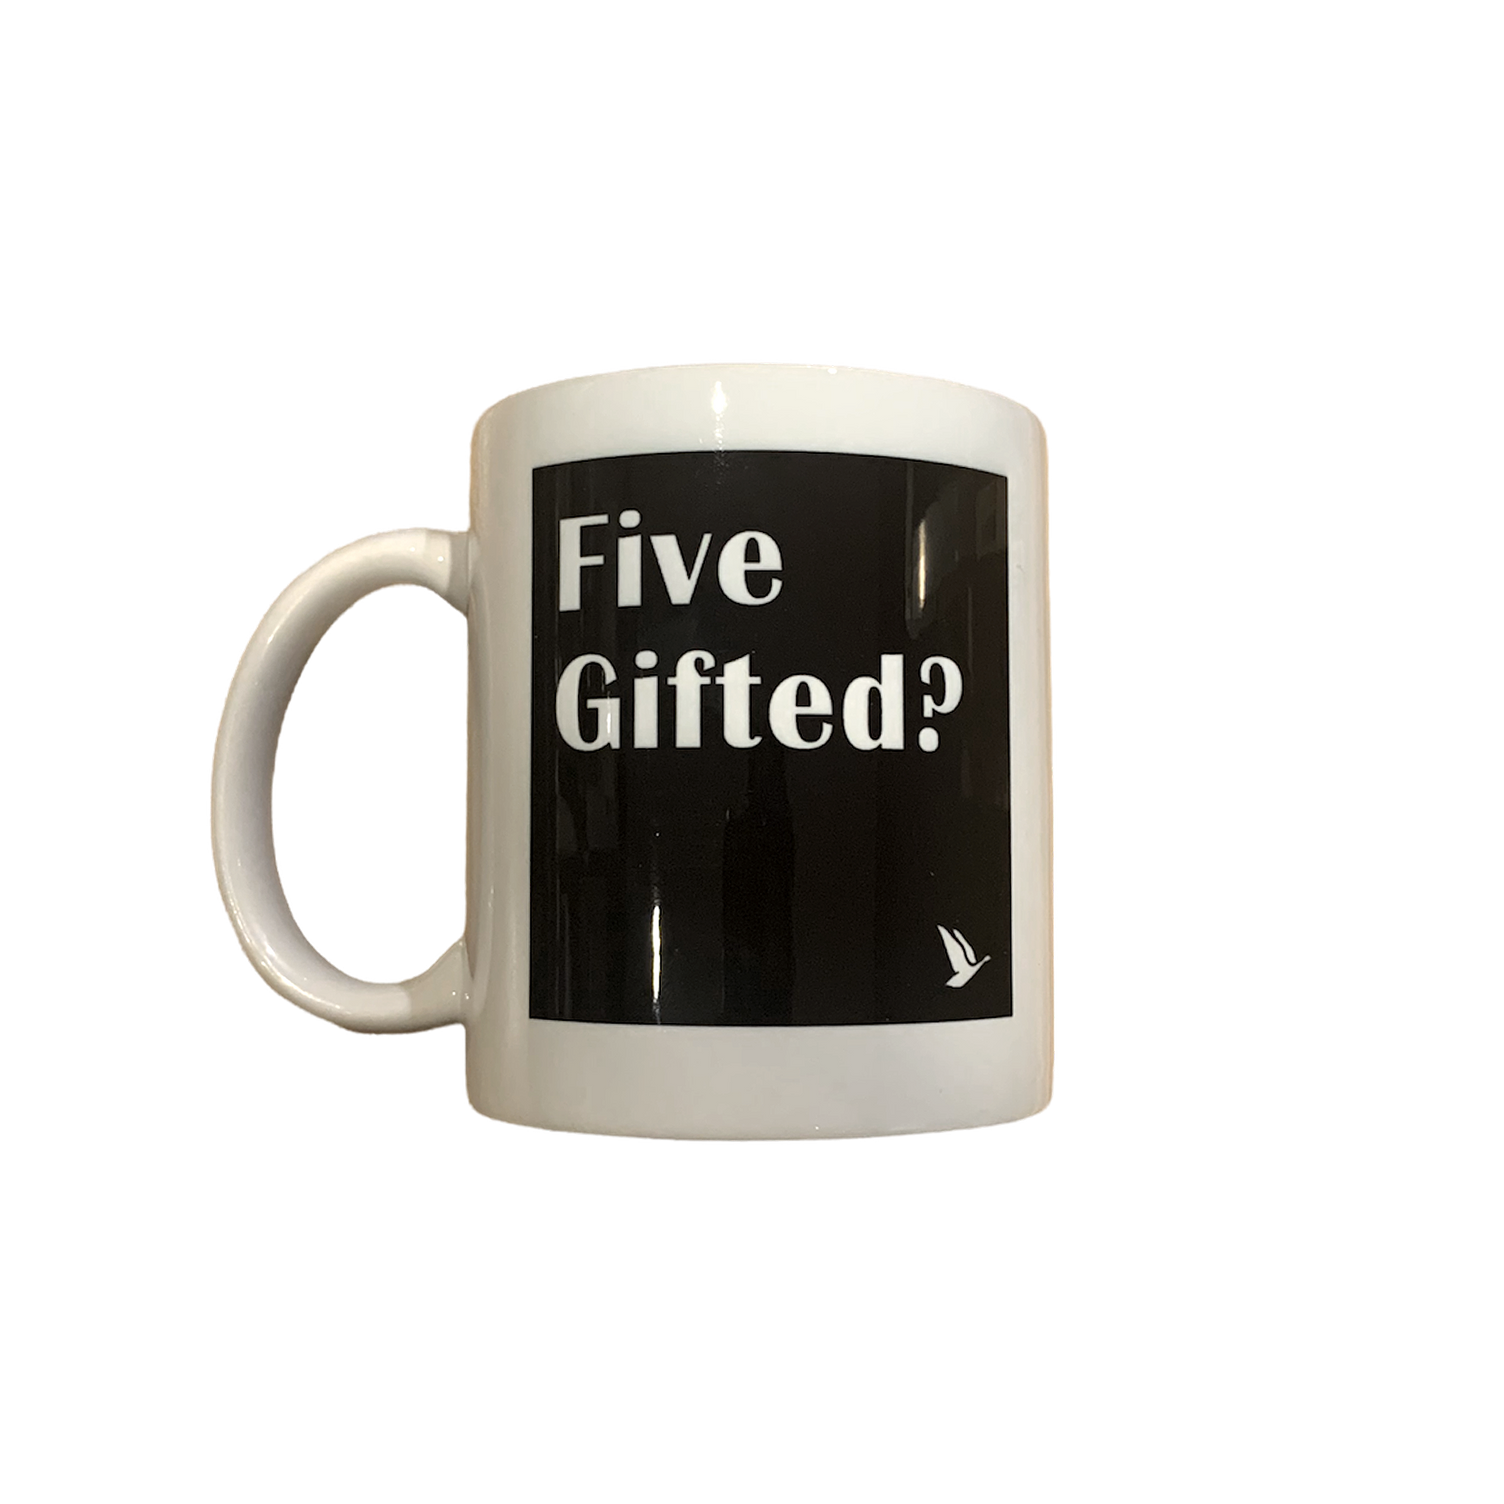 5 Gifted Mug